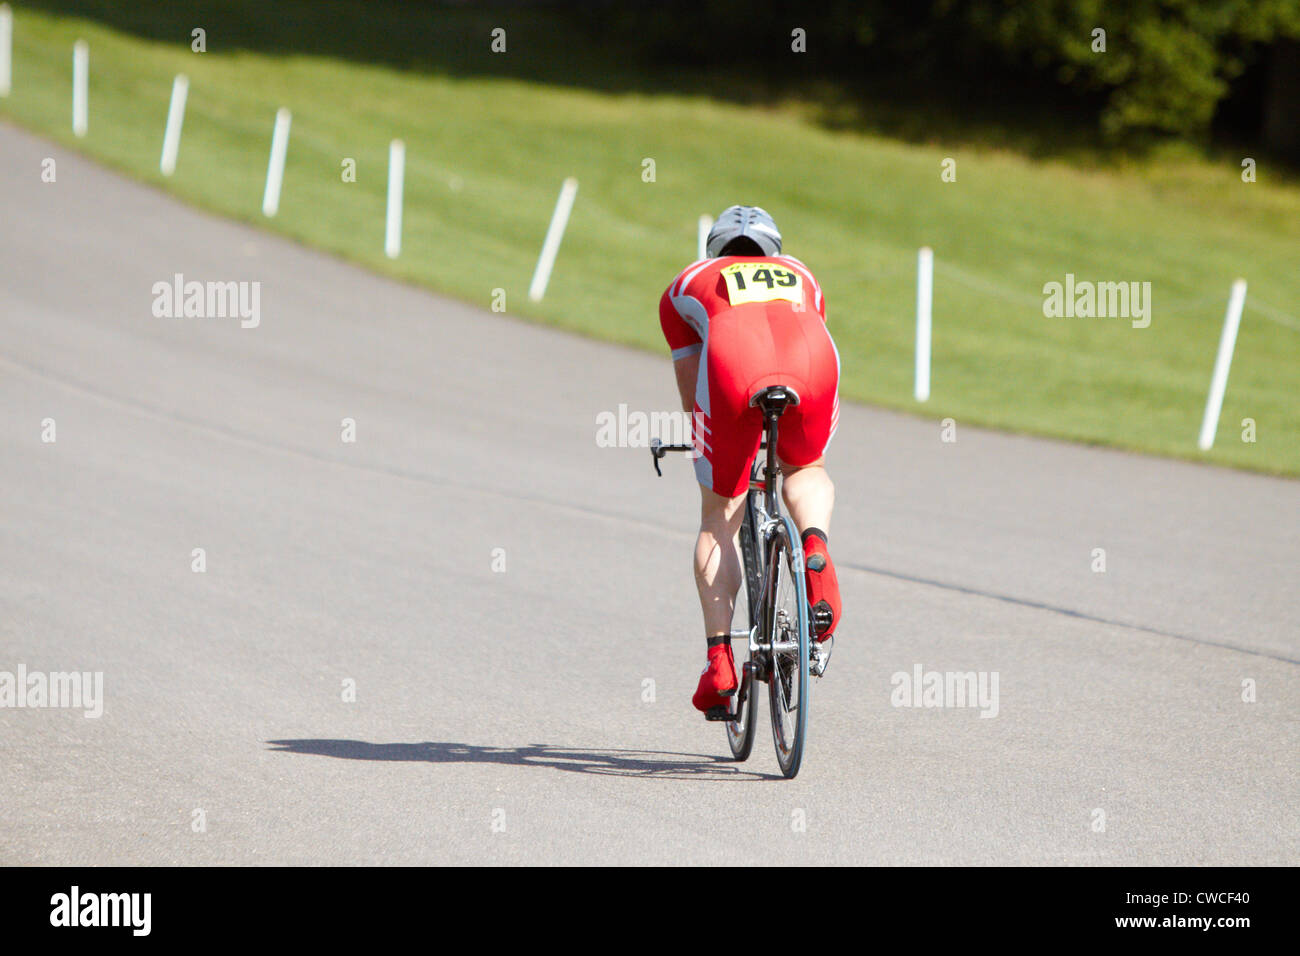 Un concorrente prende parte alla 20km di prova a tempo durante il Bike Blenheim Palace festival di Woodstock, nei pressi di Oxford Foto Stock